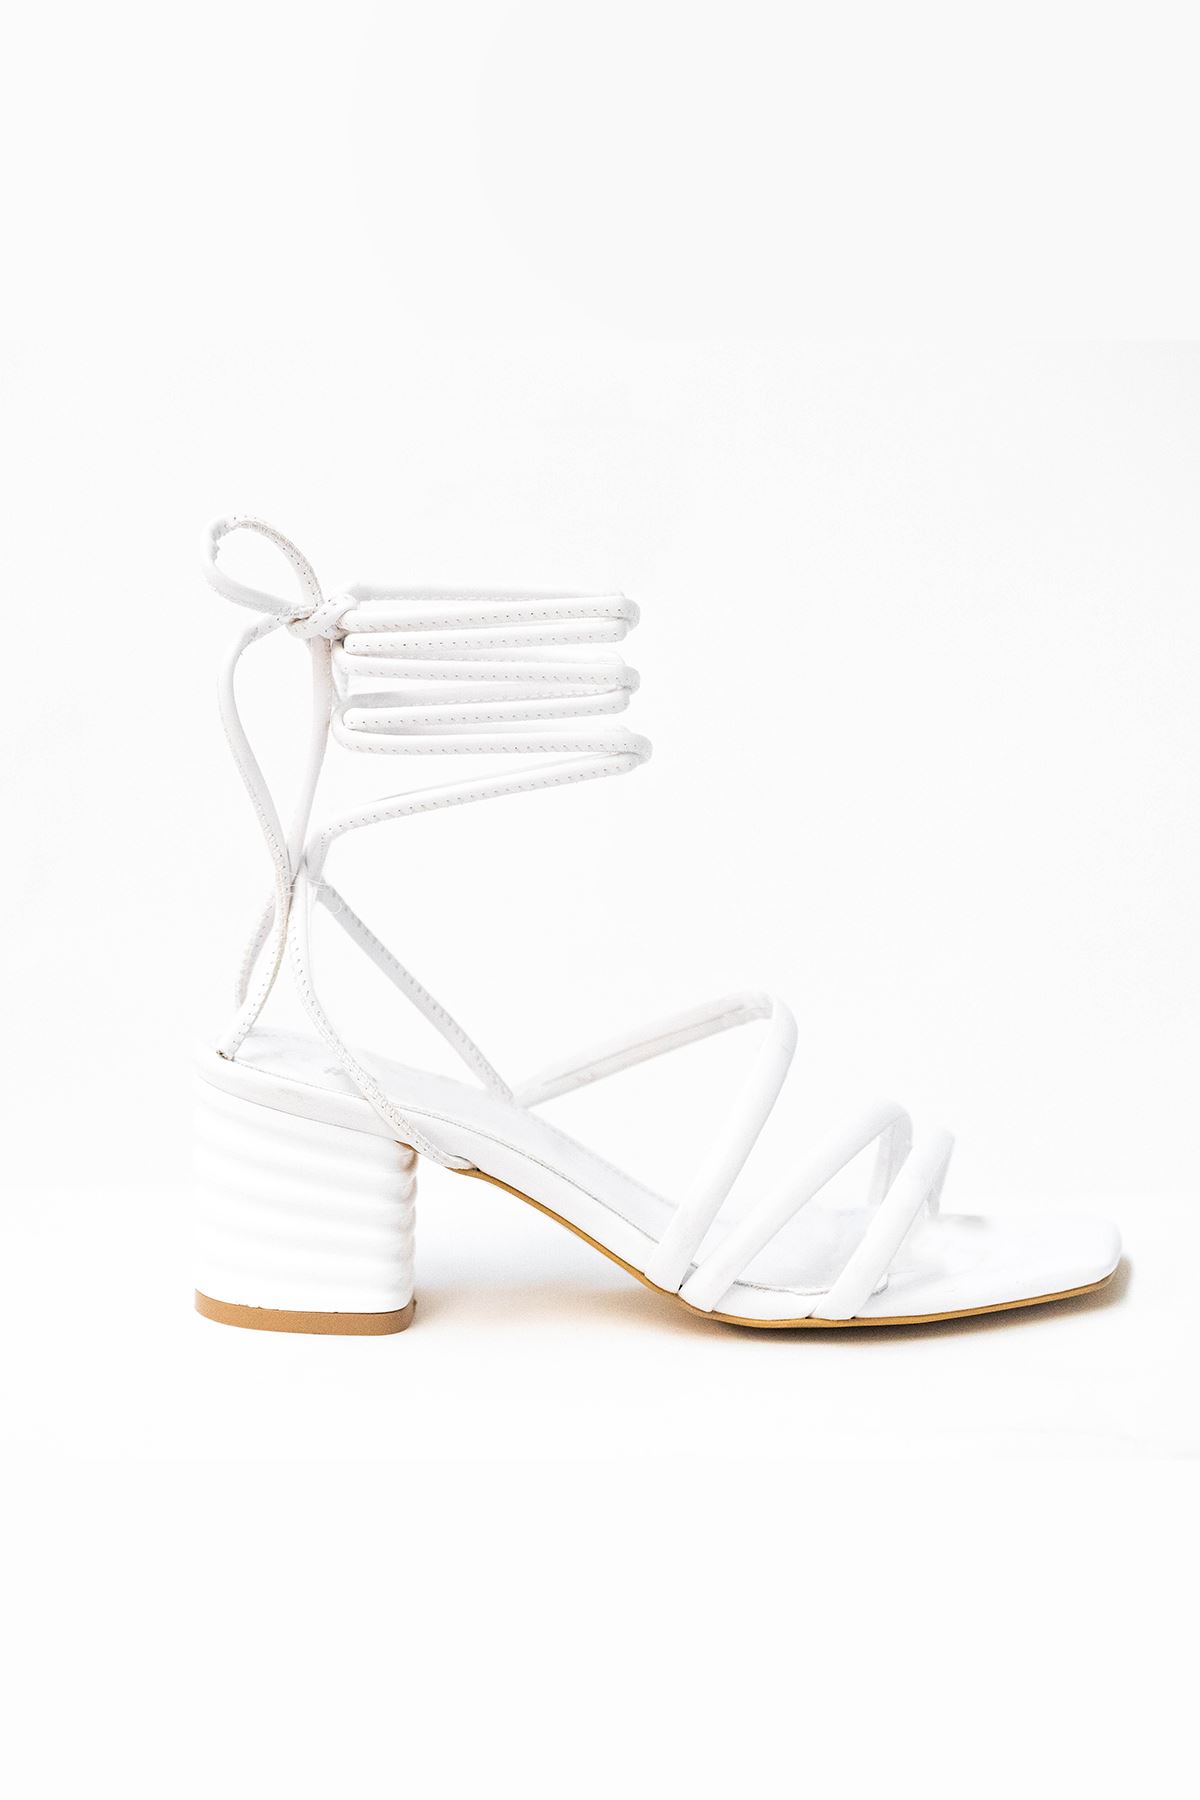 Kadın Bantlı Ve ipli Topuklu Ayakkabı Sandalet Neriva Gate Shoes-Beyaz